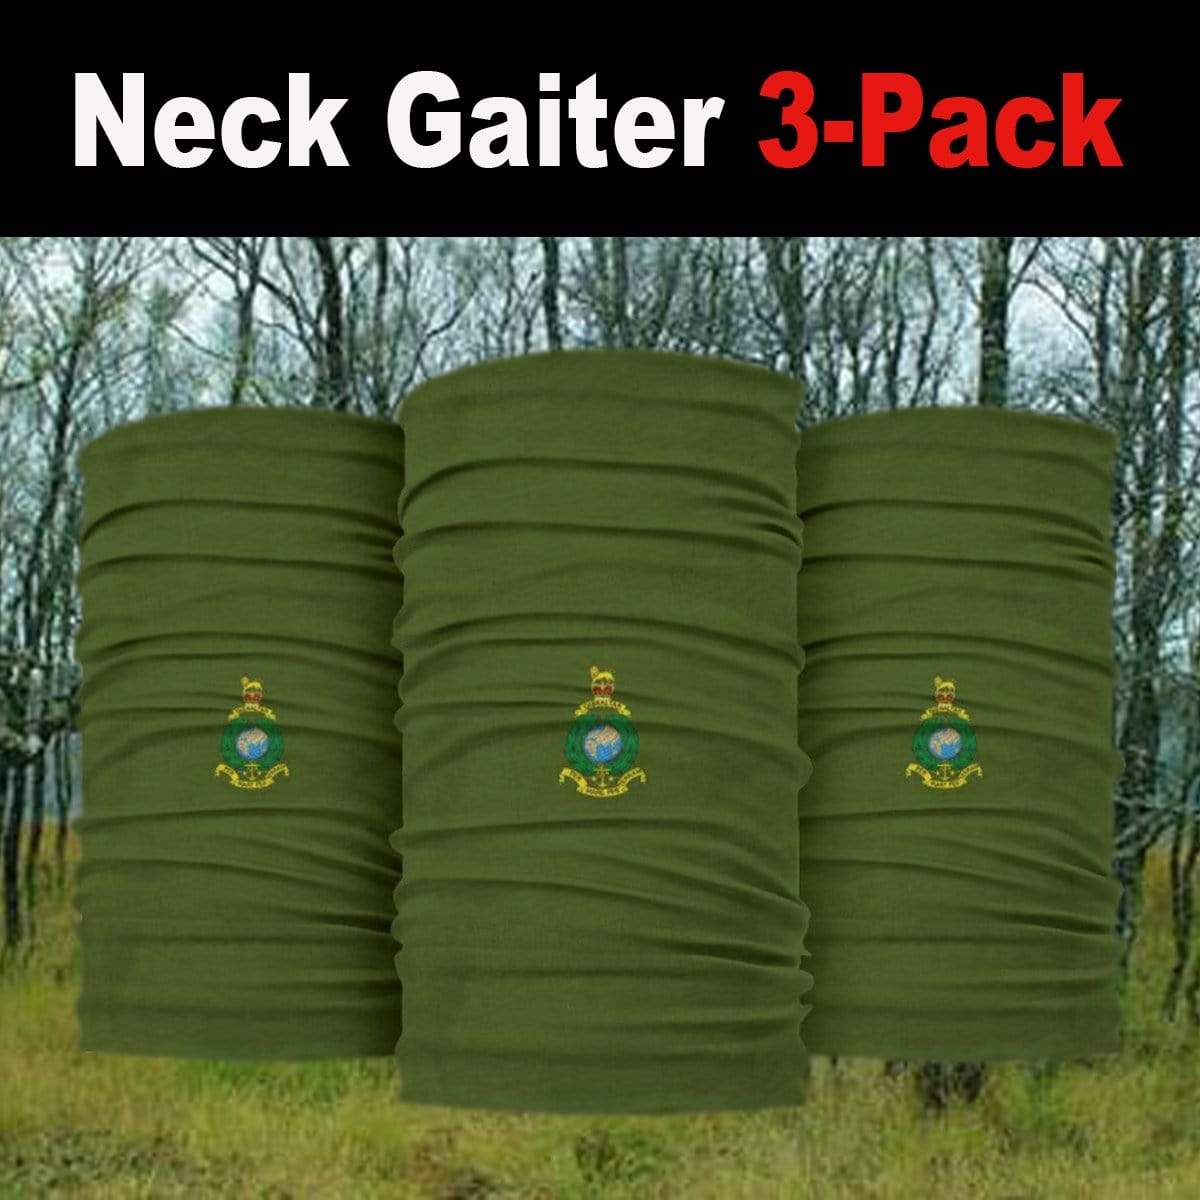 neck gaiter Bandana 3-Pack - Royal Marines Neck Gaiter 3-Pack Royal Marines Neck Gaiter/Headover 3-Pack